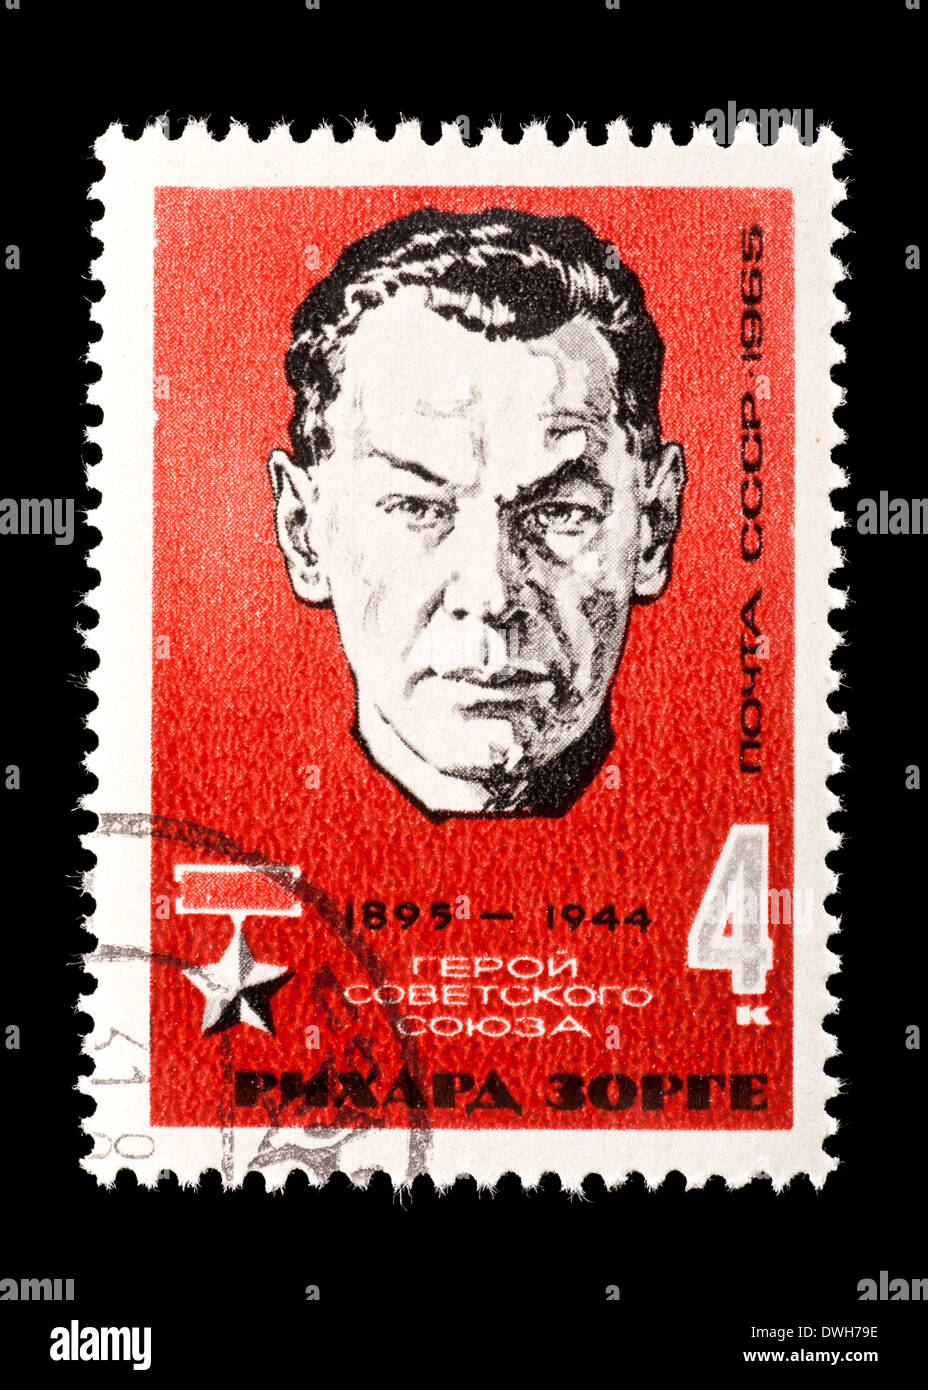 Francobollo dall'Unione Sovietica (URSS) raffigurante Richard sorge, spy sovietico ed eroe dell'Unione Sovietica. Foto Stock